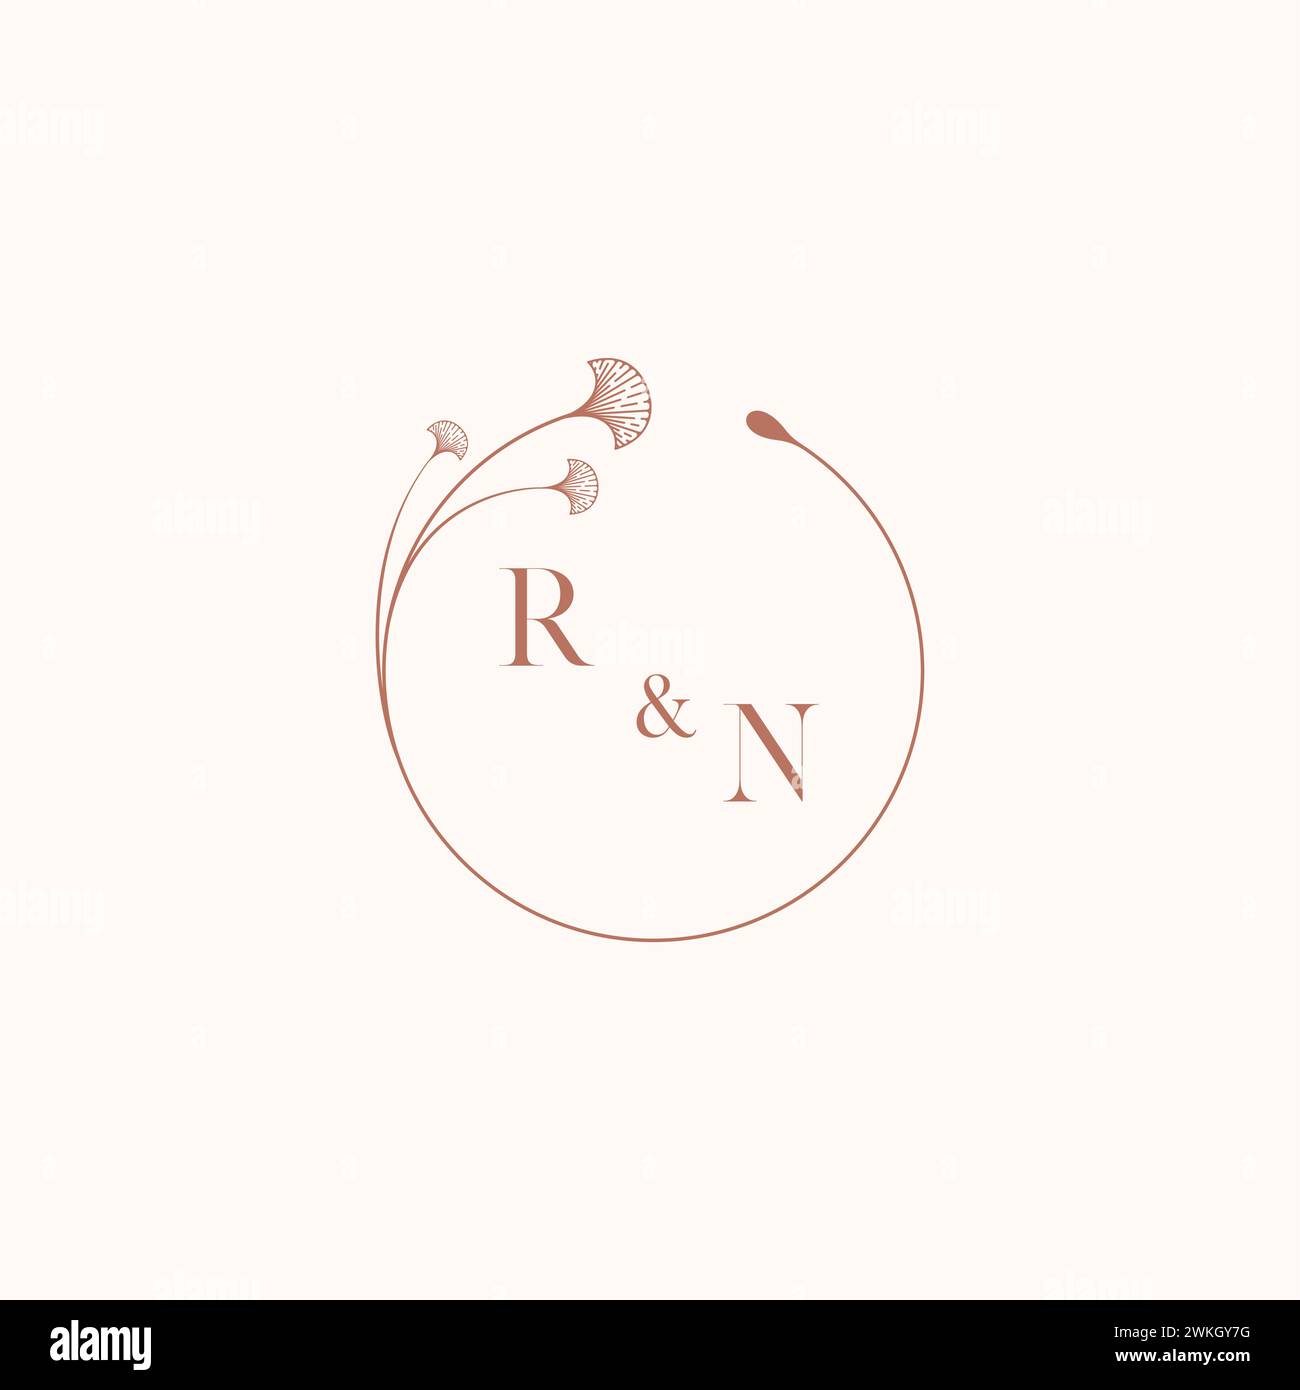 RN mariage monogramme logo designideas comme inspiration Illustration de Vecteur